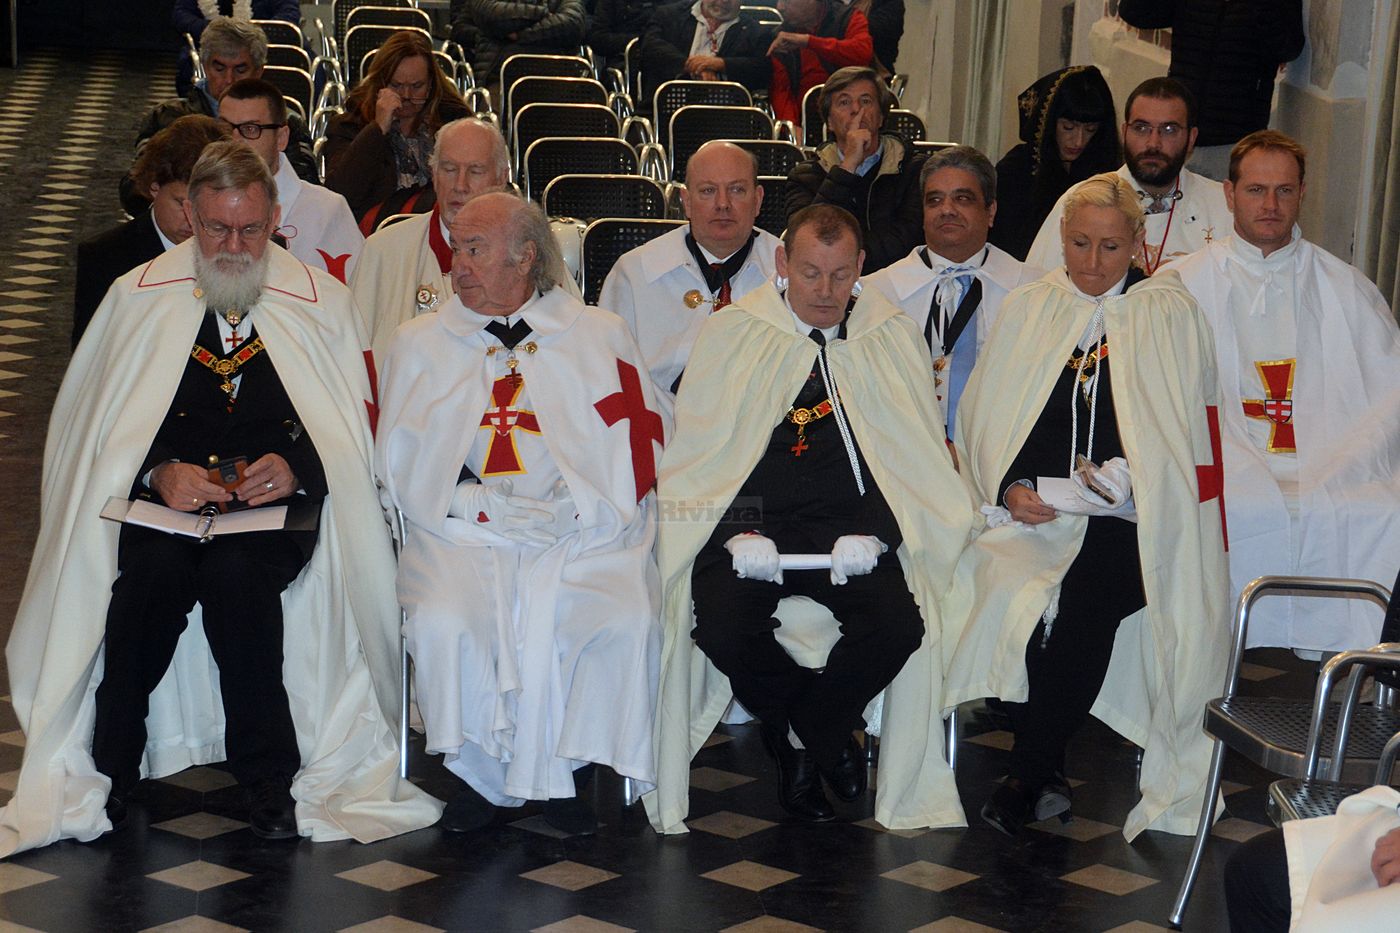 Cavalieri Templari ex chiesa San Francesco Ventimiglia 1 dicembre 2018_53